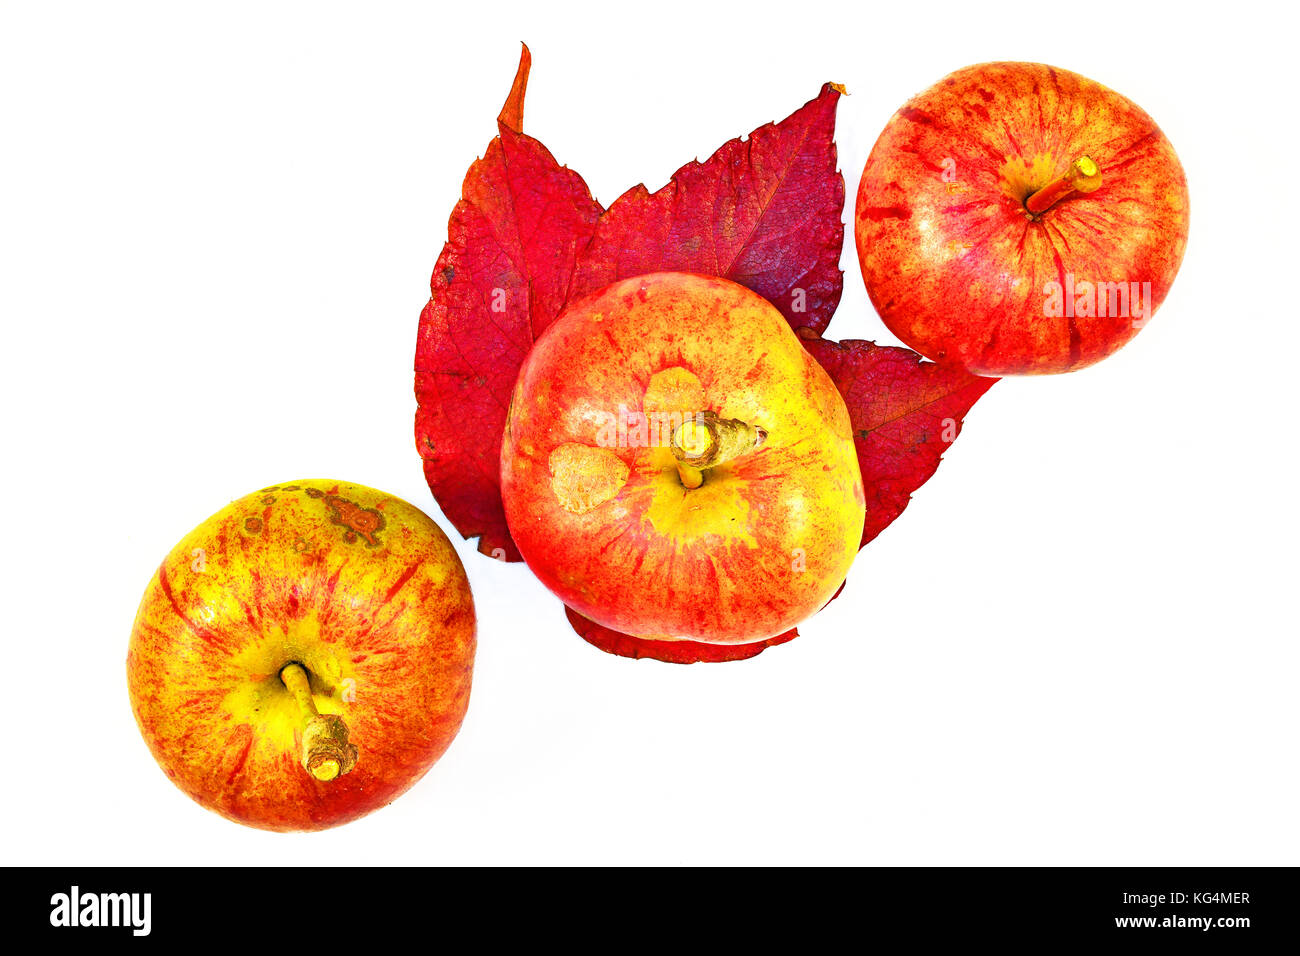 3 pommes de jardin diagonales rouges, vertes et jaunes, à longues tiges et feuilles d'automne Banque D'Images